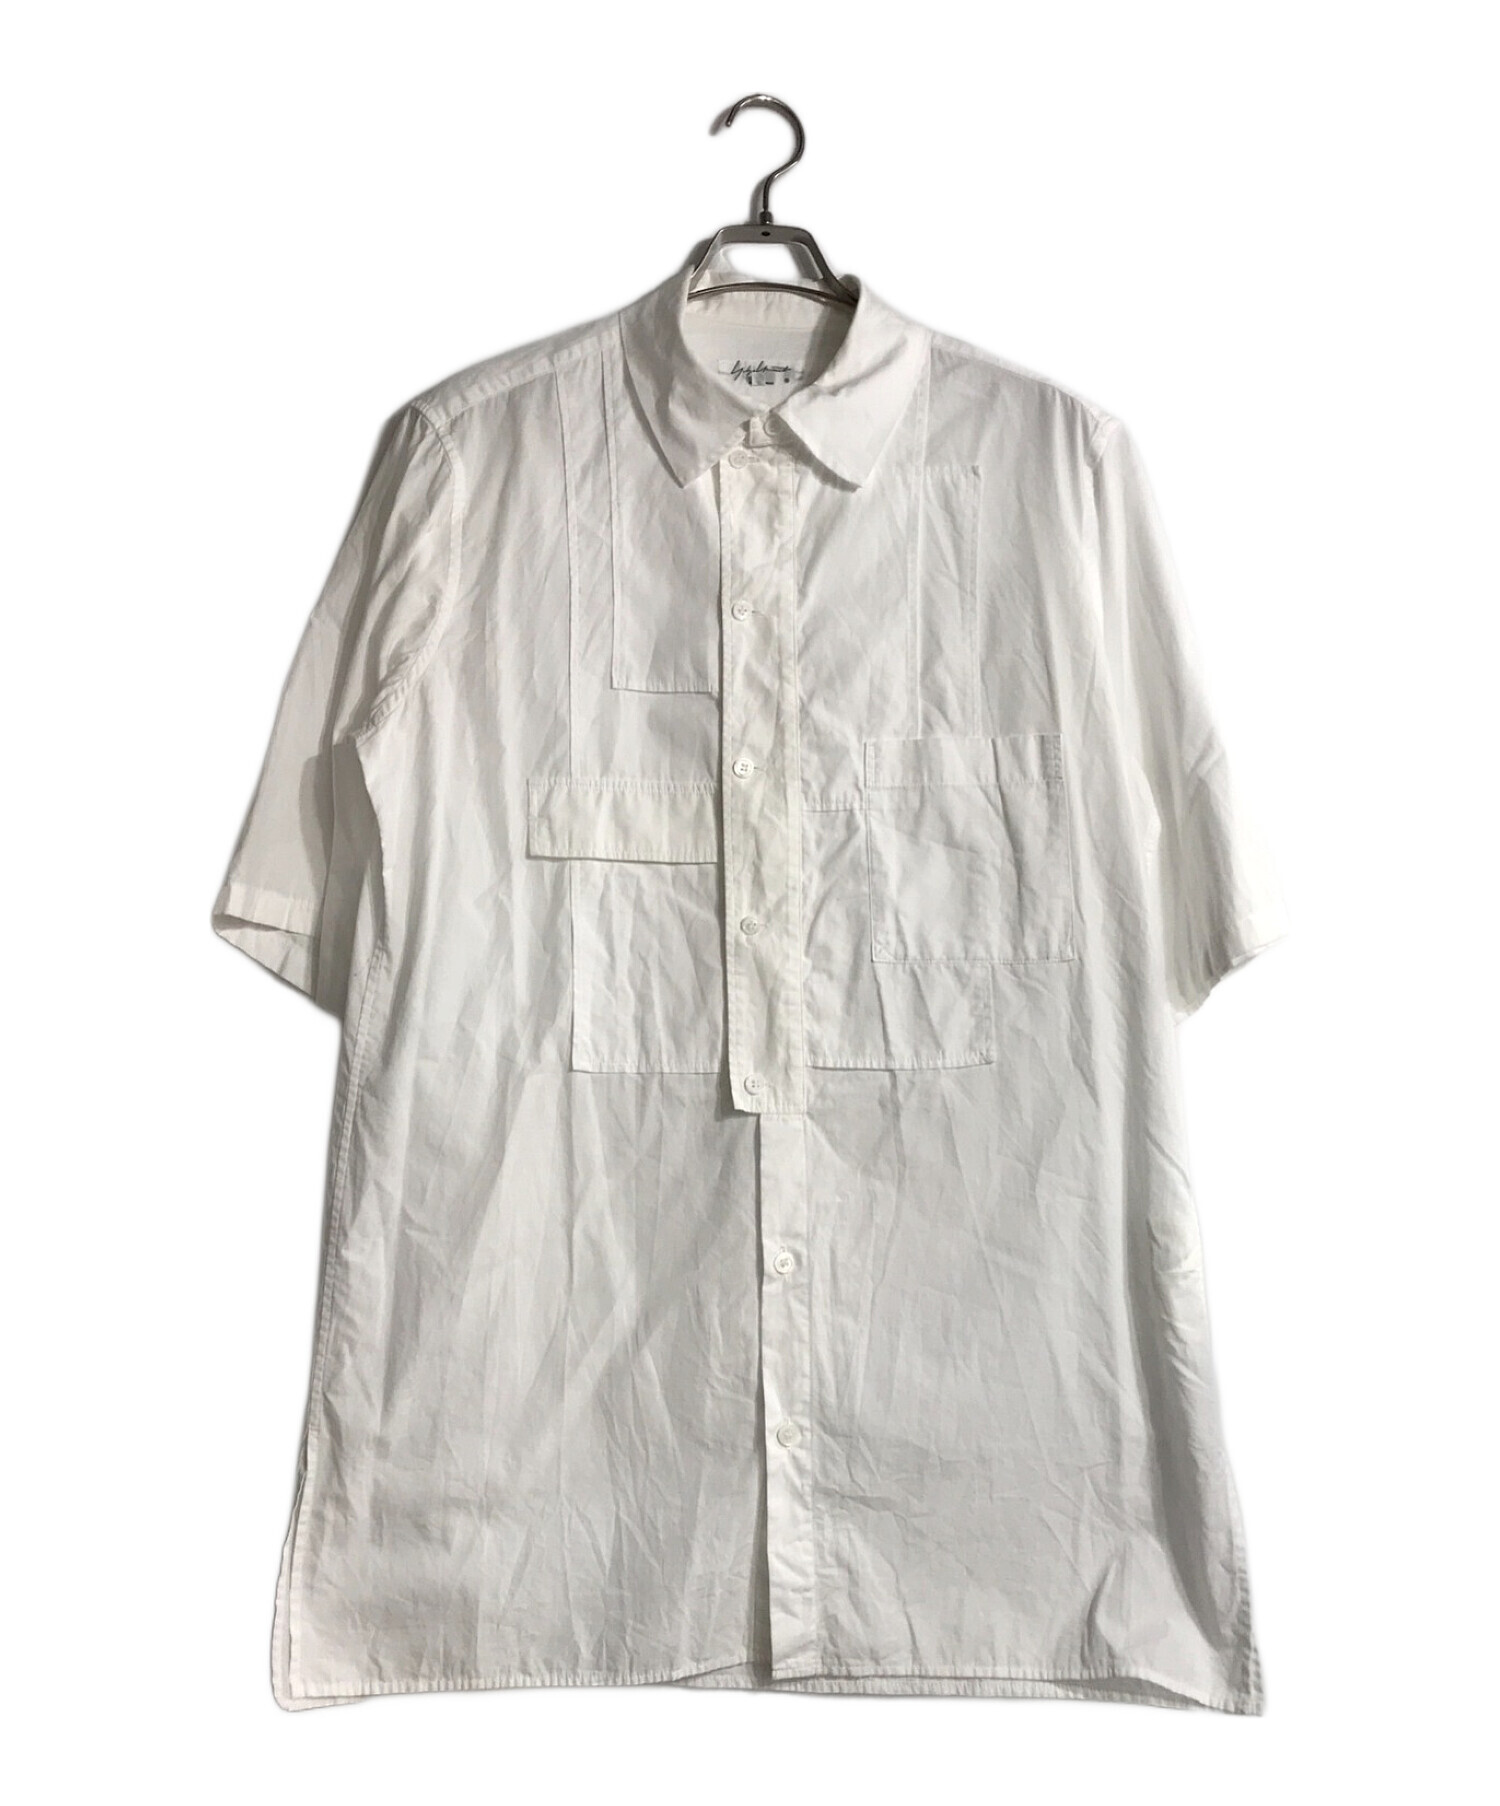 Yohji Yamamoto pour homme (ヨウジヤマモト プールオム) ブロードパッチワークシャツ ホワイト サイズ:2